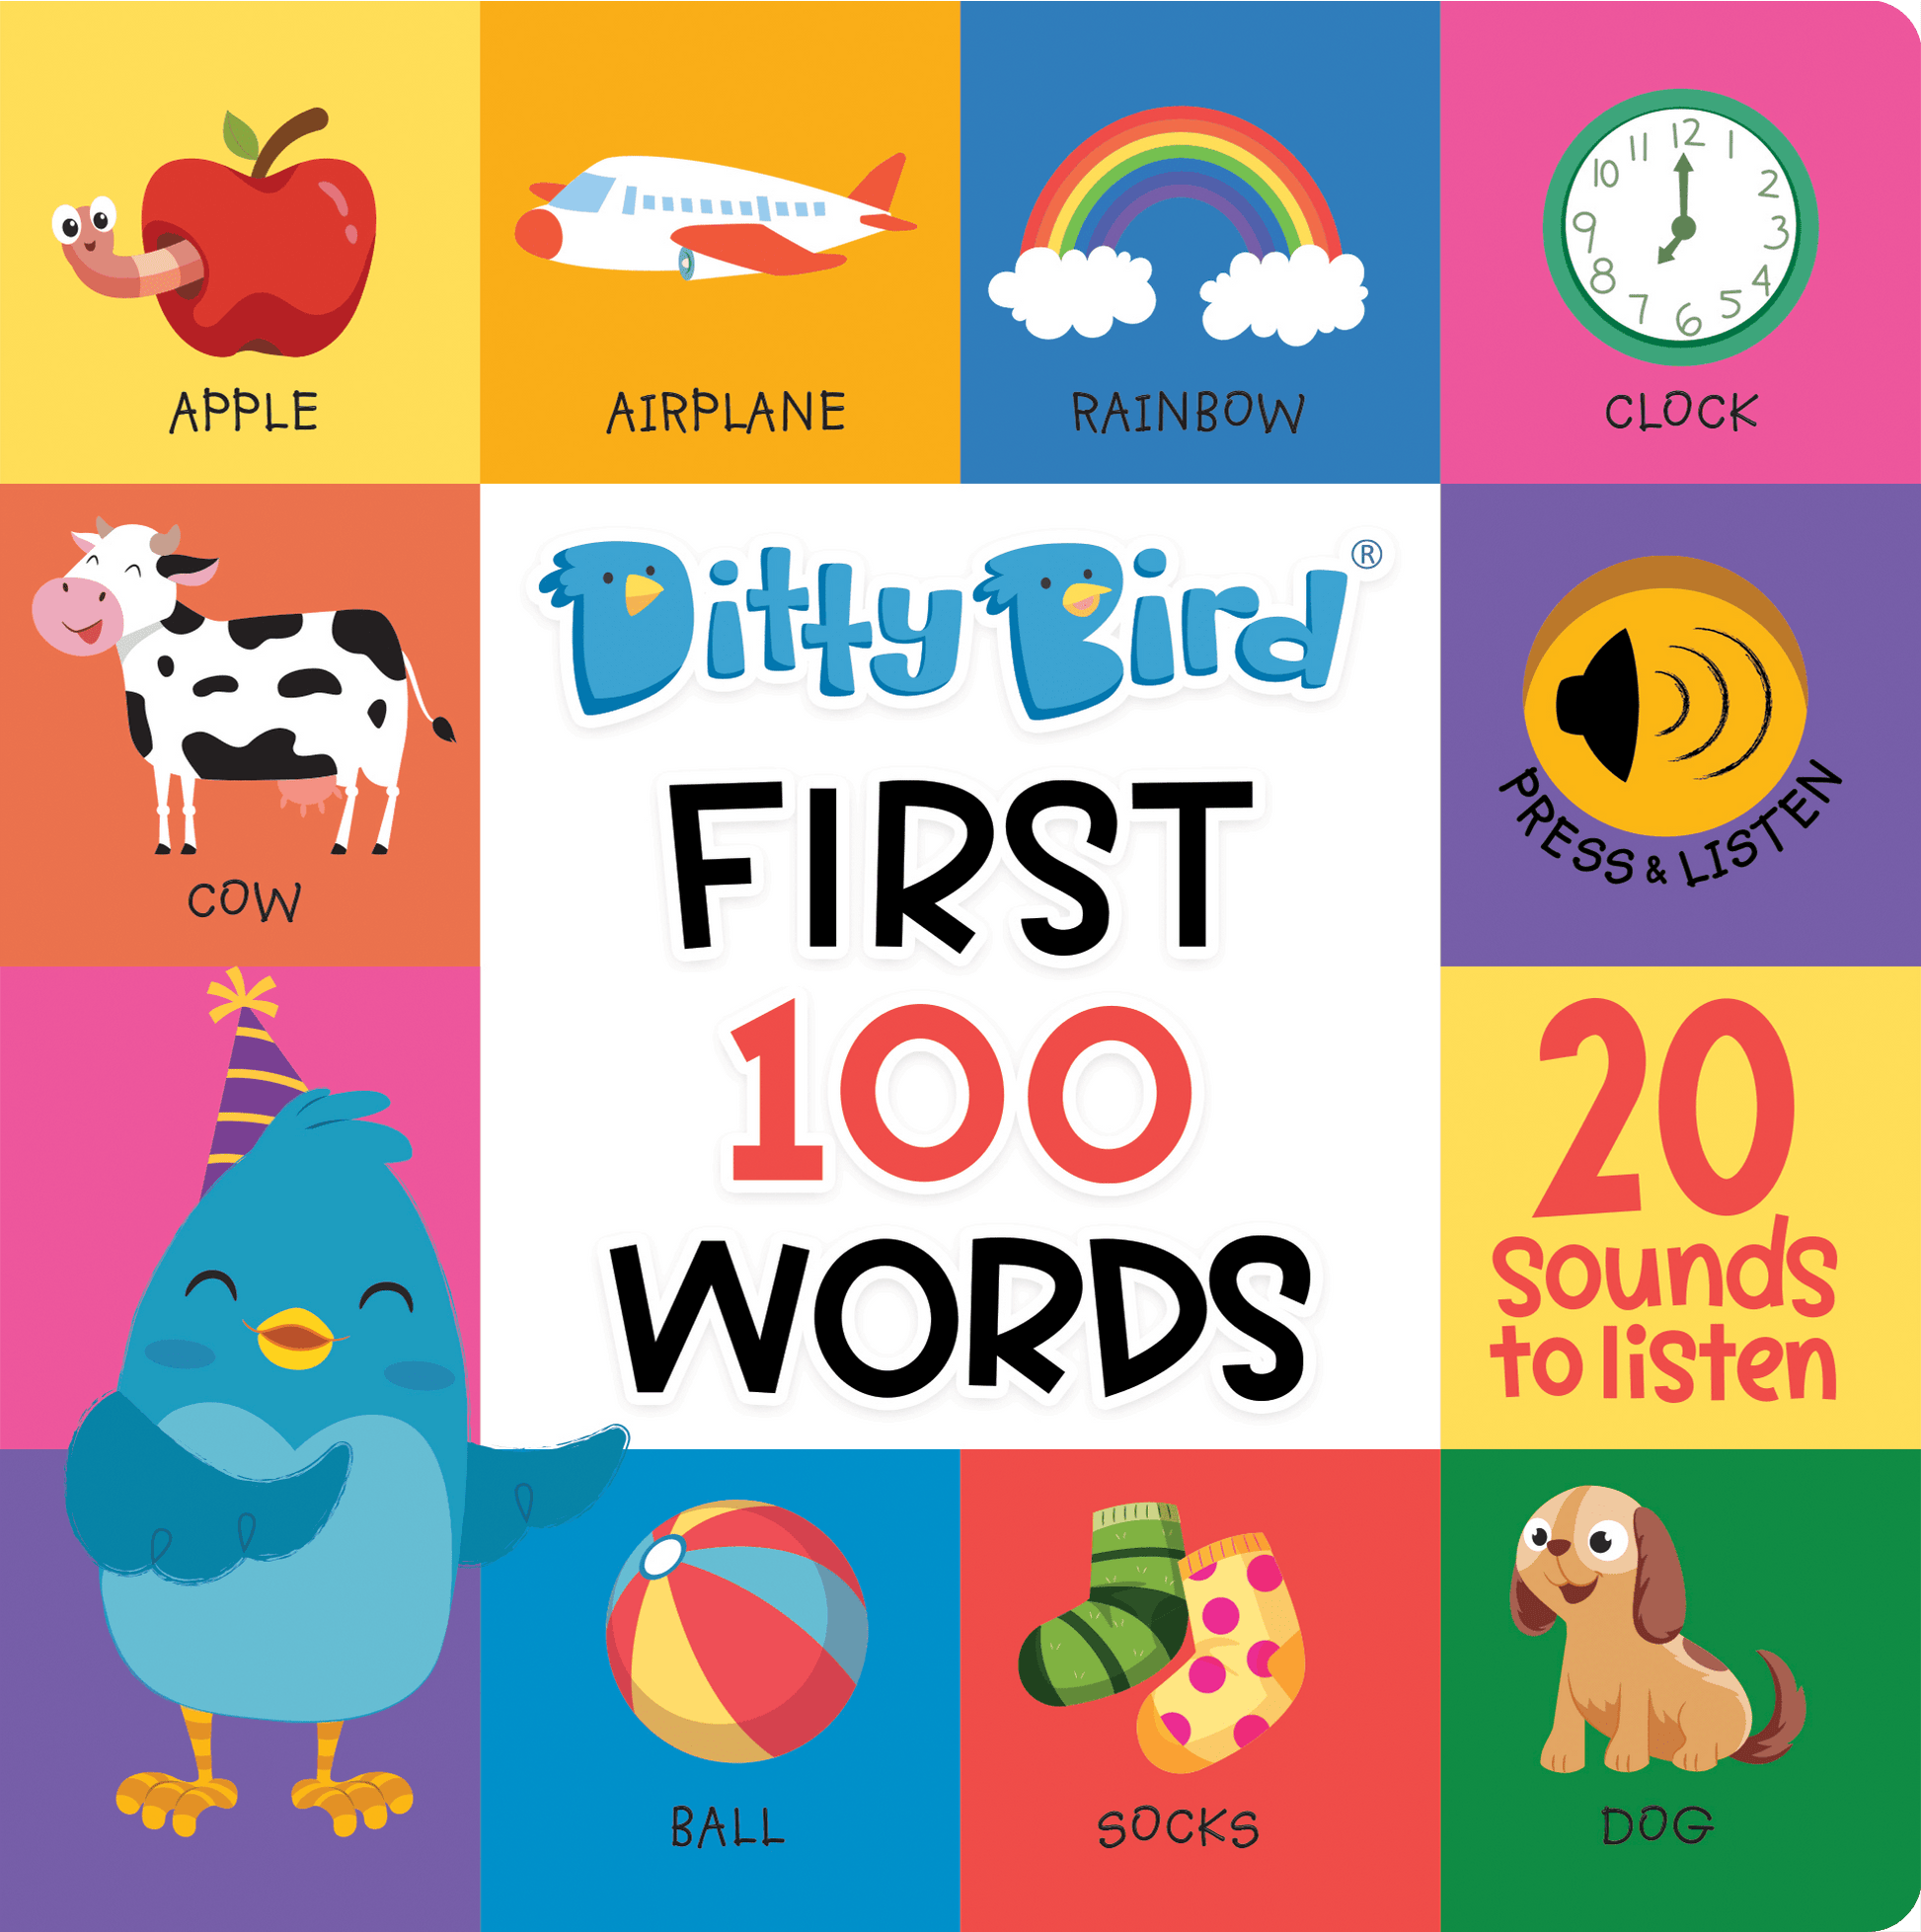 Ditty Bird Libros Libro Interactivo Musical First 100 Words DI027